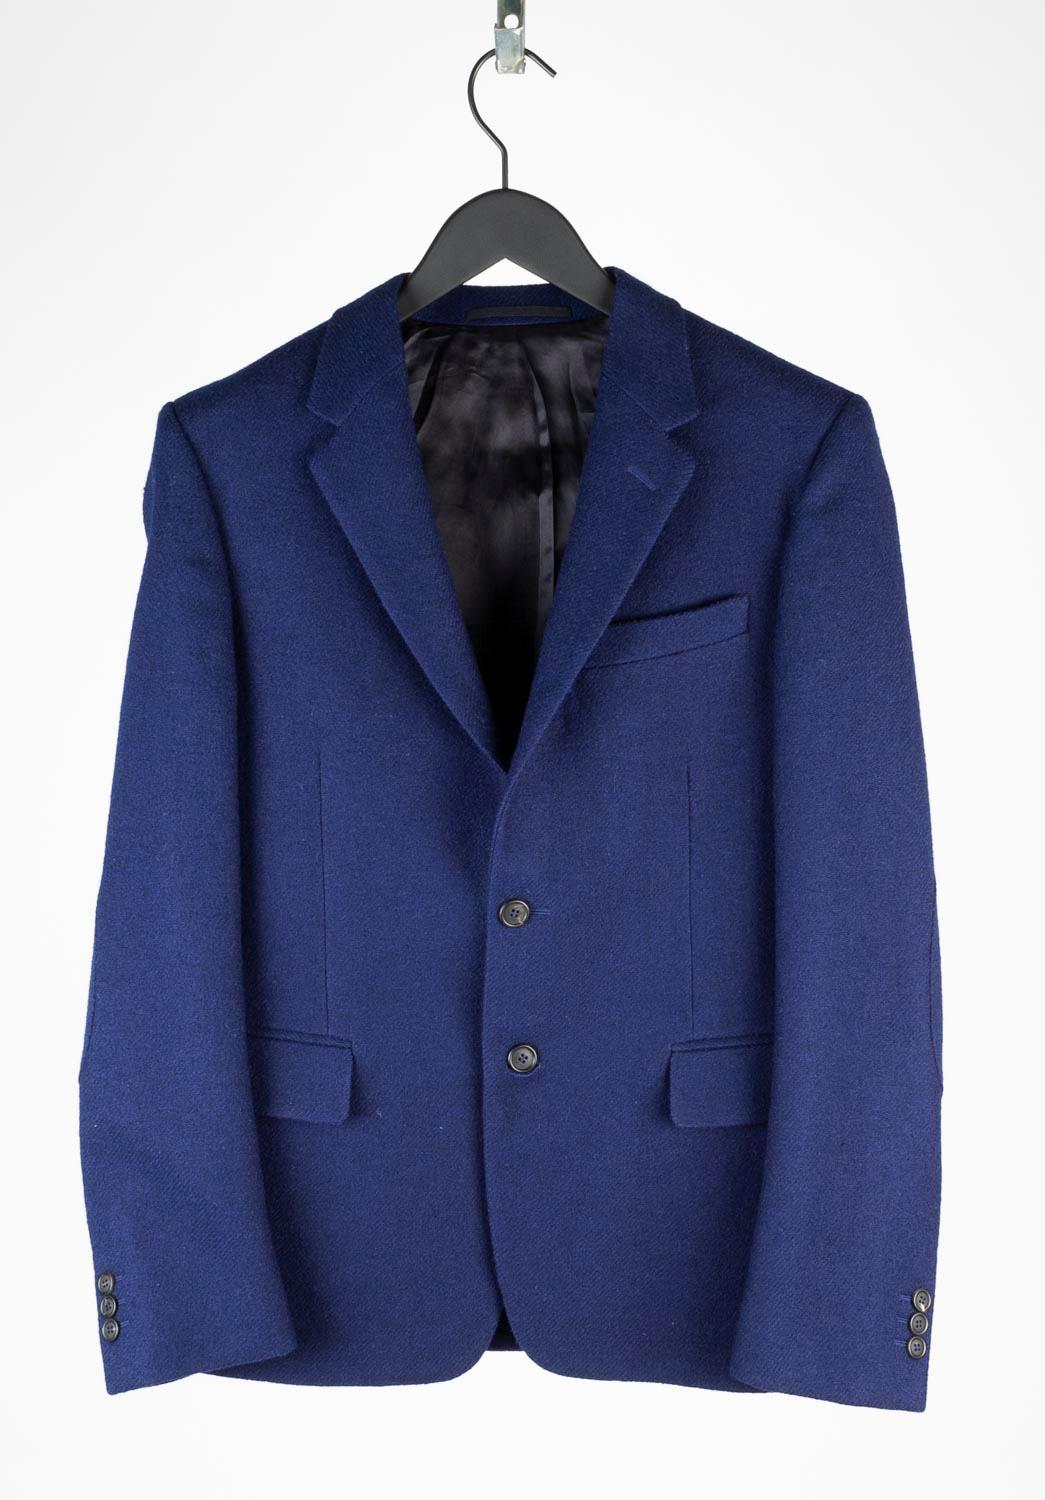 100% authentique Prada Veste pour homme, S625
Couleur : bleu
(La couleur réelle peut varier légèrement en raison de l'interprétation individuelle de l'écran de l'ordinateur).
Matière : 80% laine, 20% mohair
Taille de l'étiquette : ITA 50